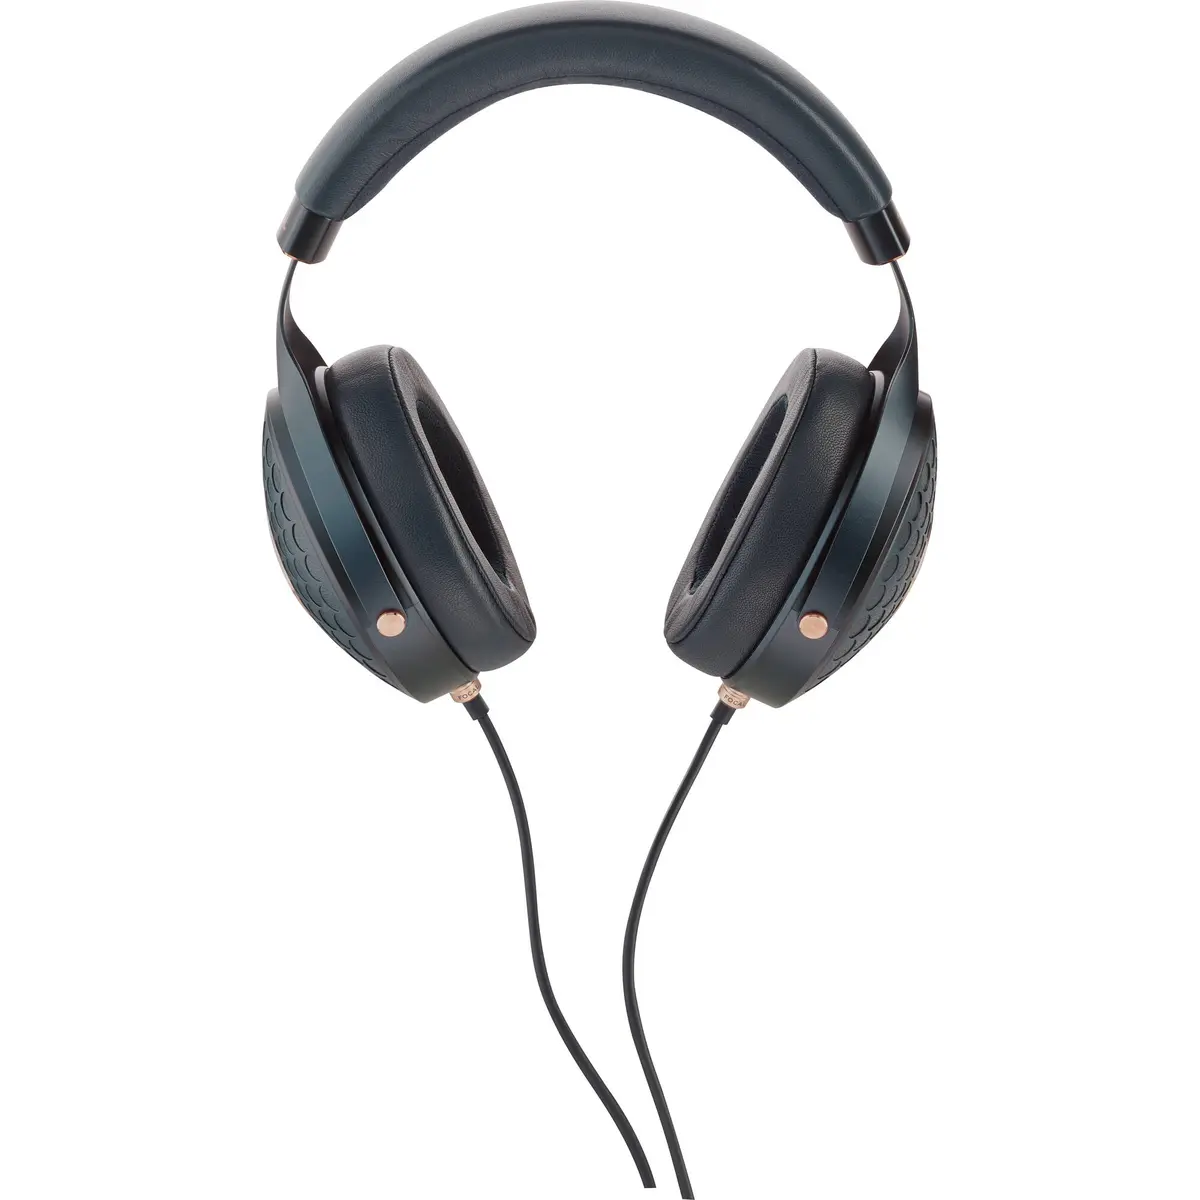 4. Focal Celestee High-end Over-ear headphones